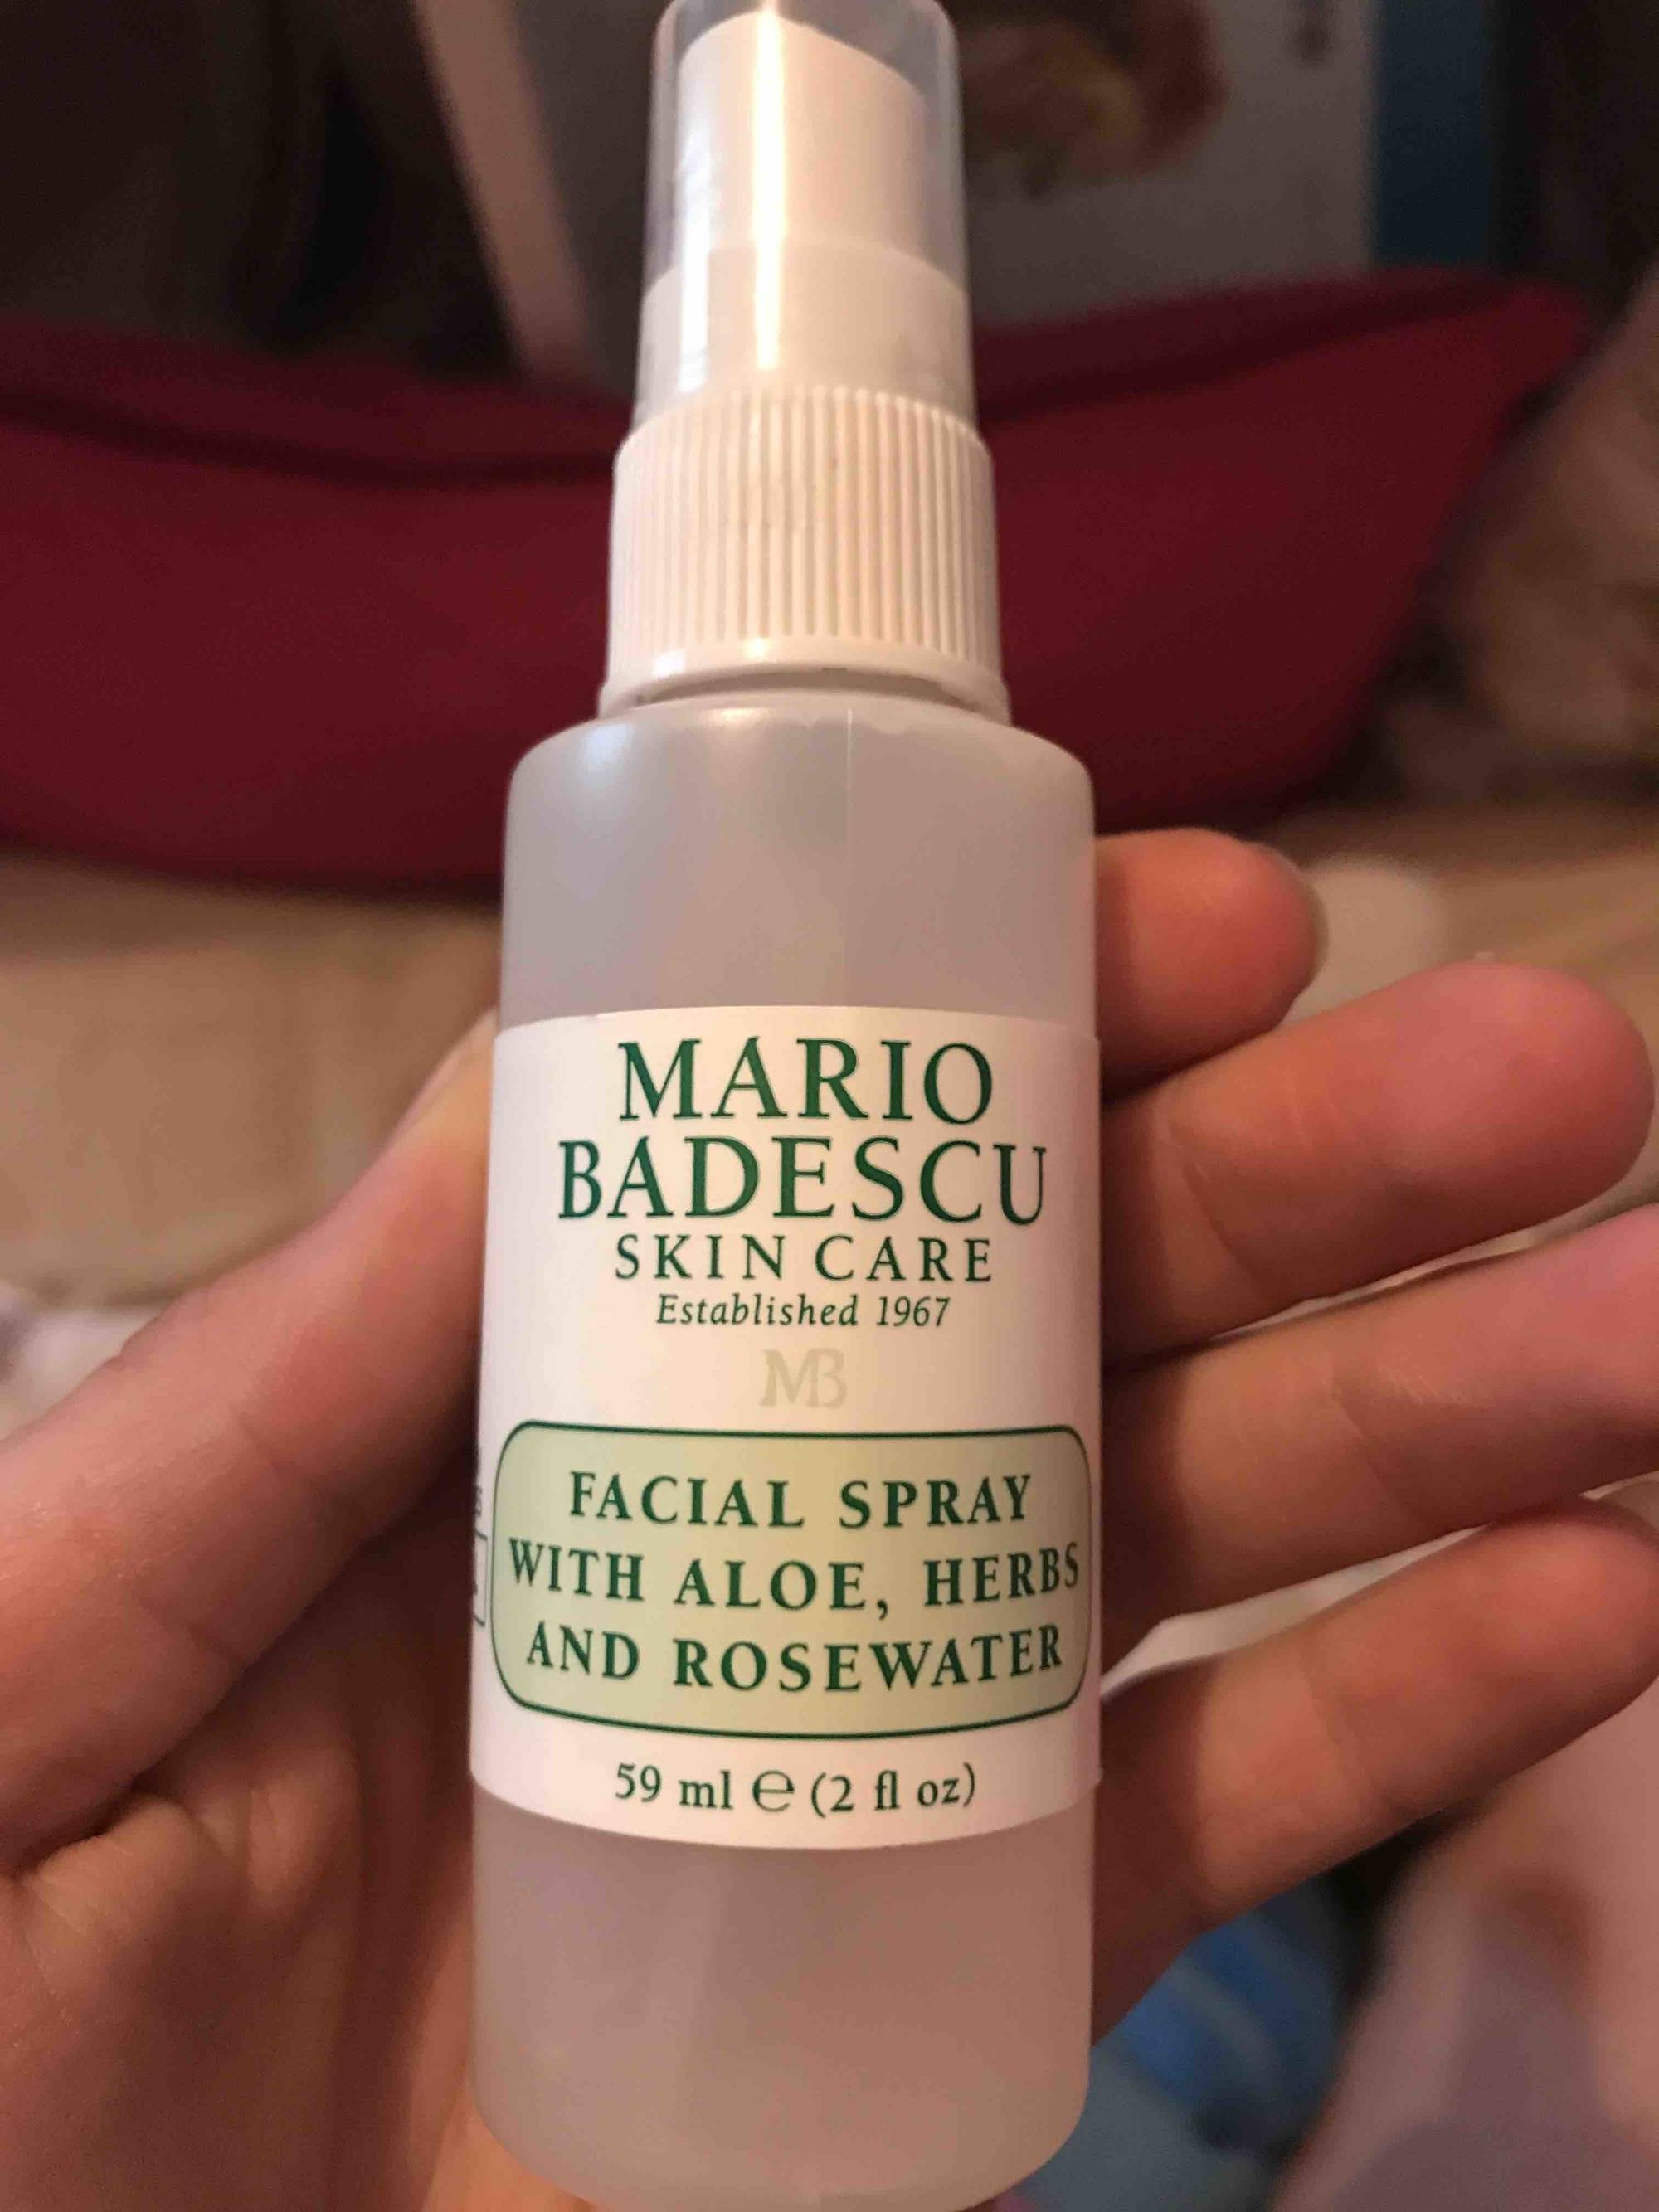 MARIO BADESCU -  Facial spray with aloe, herbs and rosewater